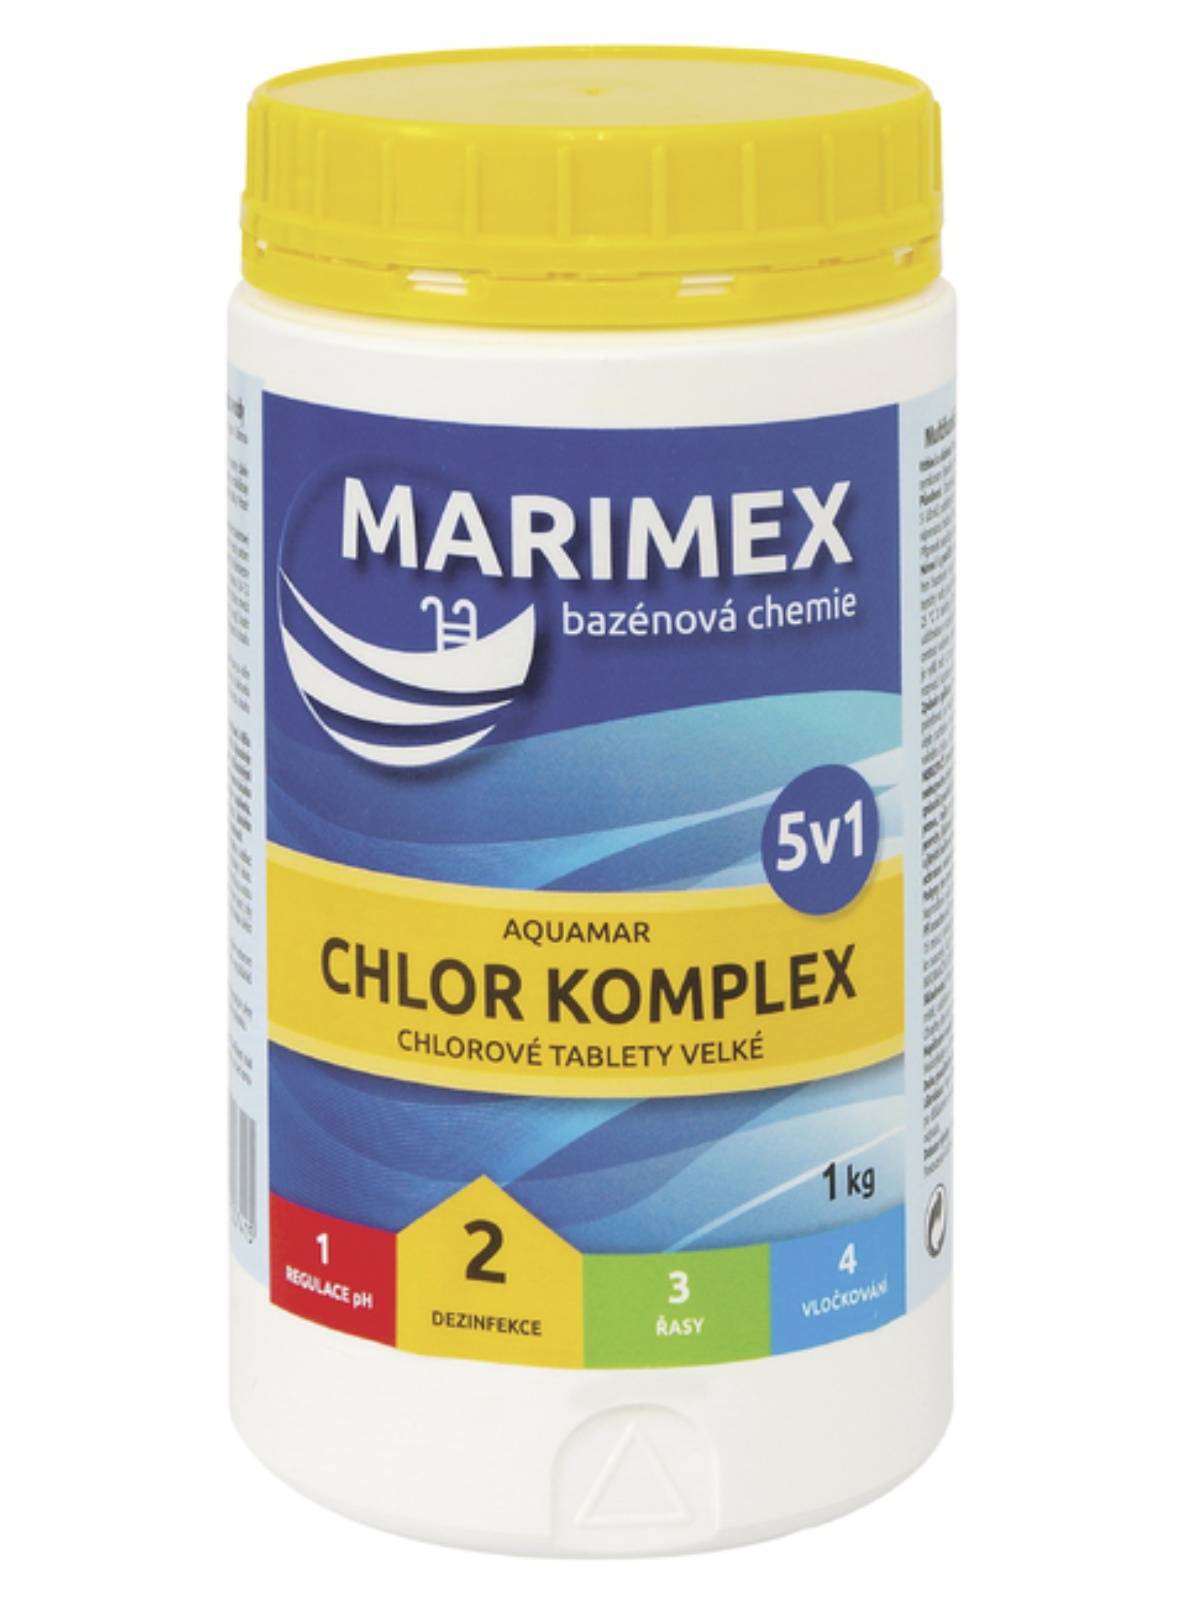 Bazénová chemie MARIMEX Komplex 5v1 1 kg